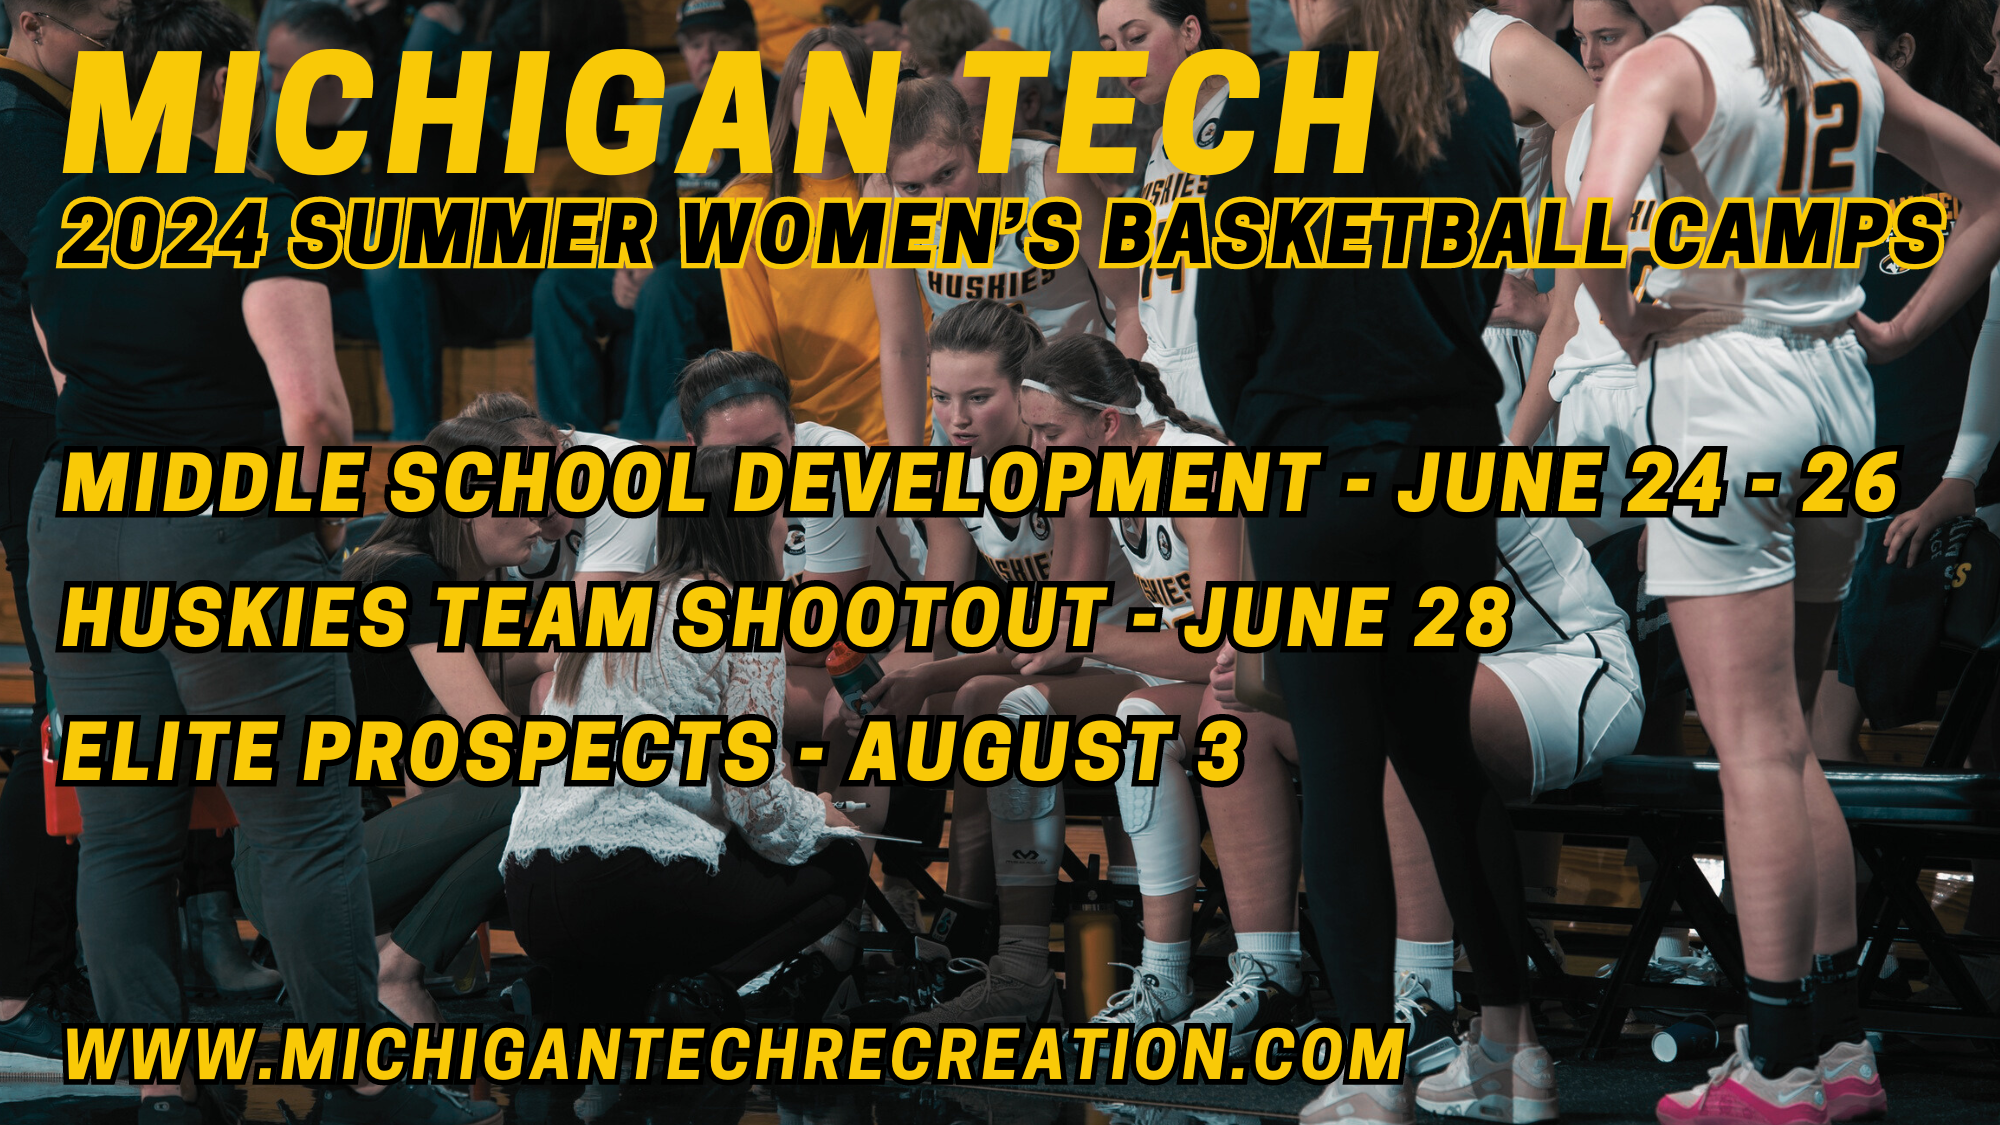 Michigan Tech
2-24 Summer Women's Basketball Camps
Middle School Development - June 24-26
Huskies Team Shootout - June 28
Elite Prospects - August 3
www.michigantechrecreation.com